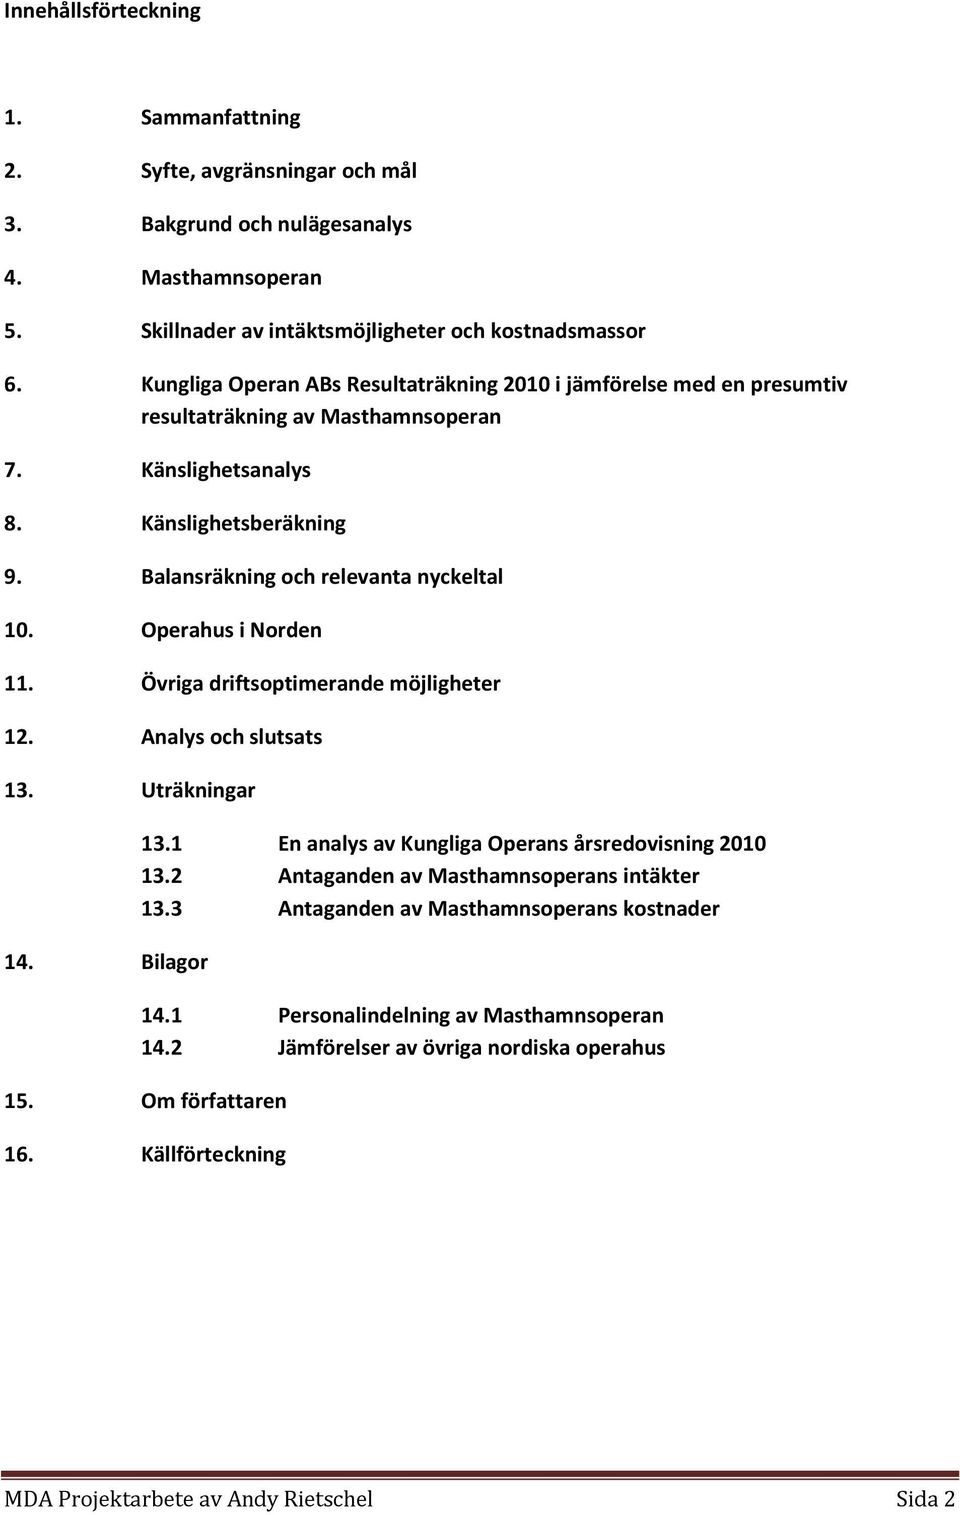 Operahus i Norden 11. Övriga driftsoptimerande möjligheter 12. Analys och slutsats 13. Uträkningar 14. Bilagor 13.1 En analys av Kungliga Operans årsredovisning 2010 13.